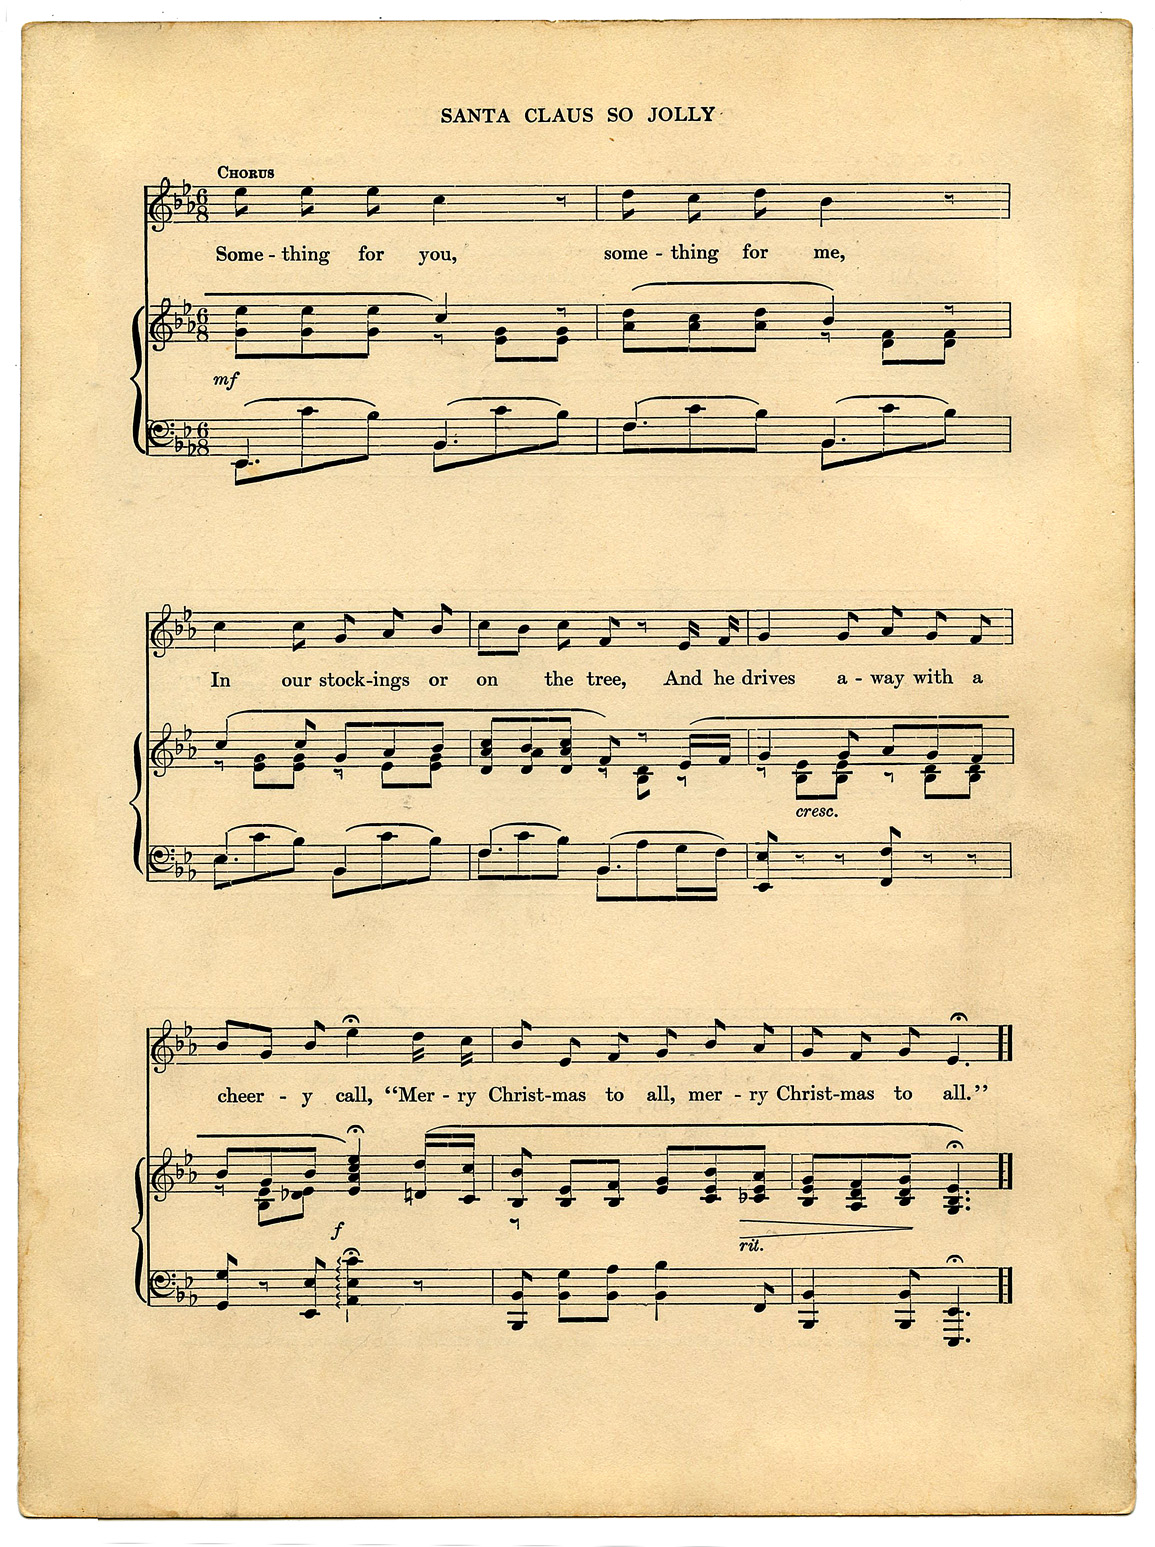 9-best-images-of-vintage-sheet-music-printable-free-printable-vintage